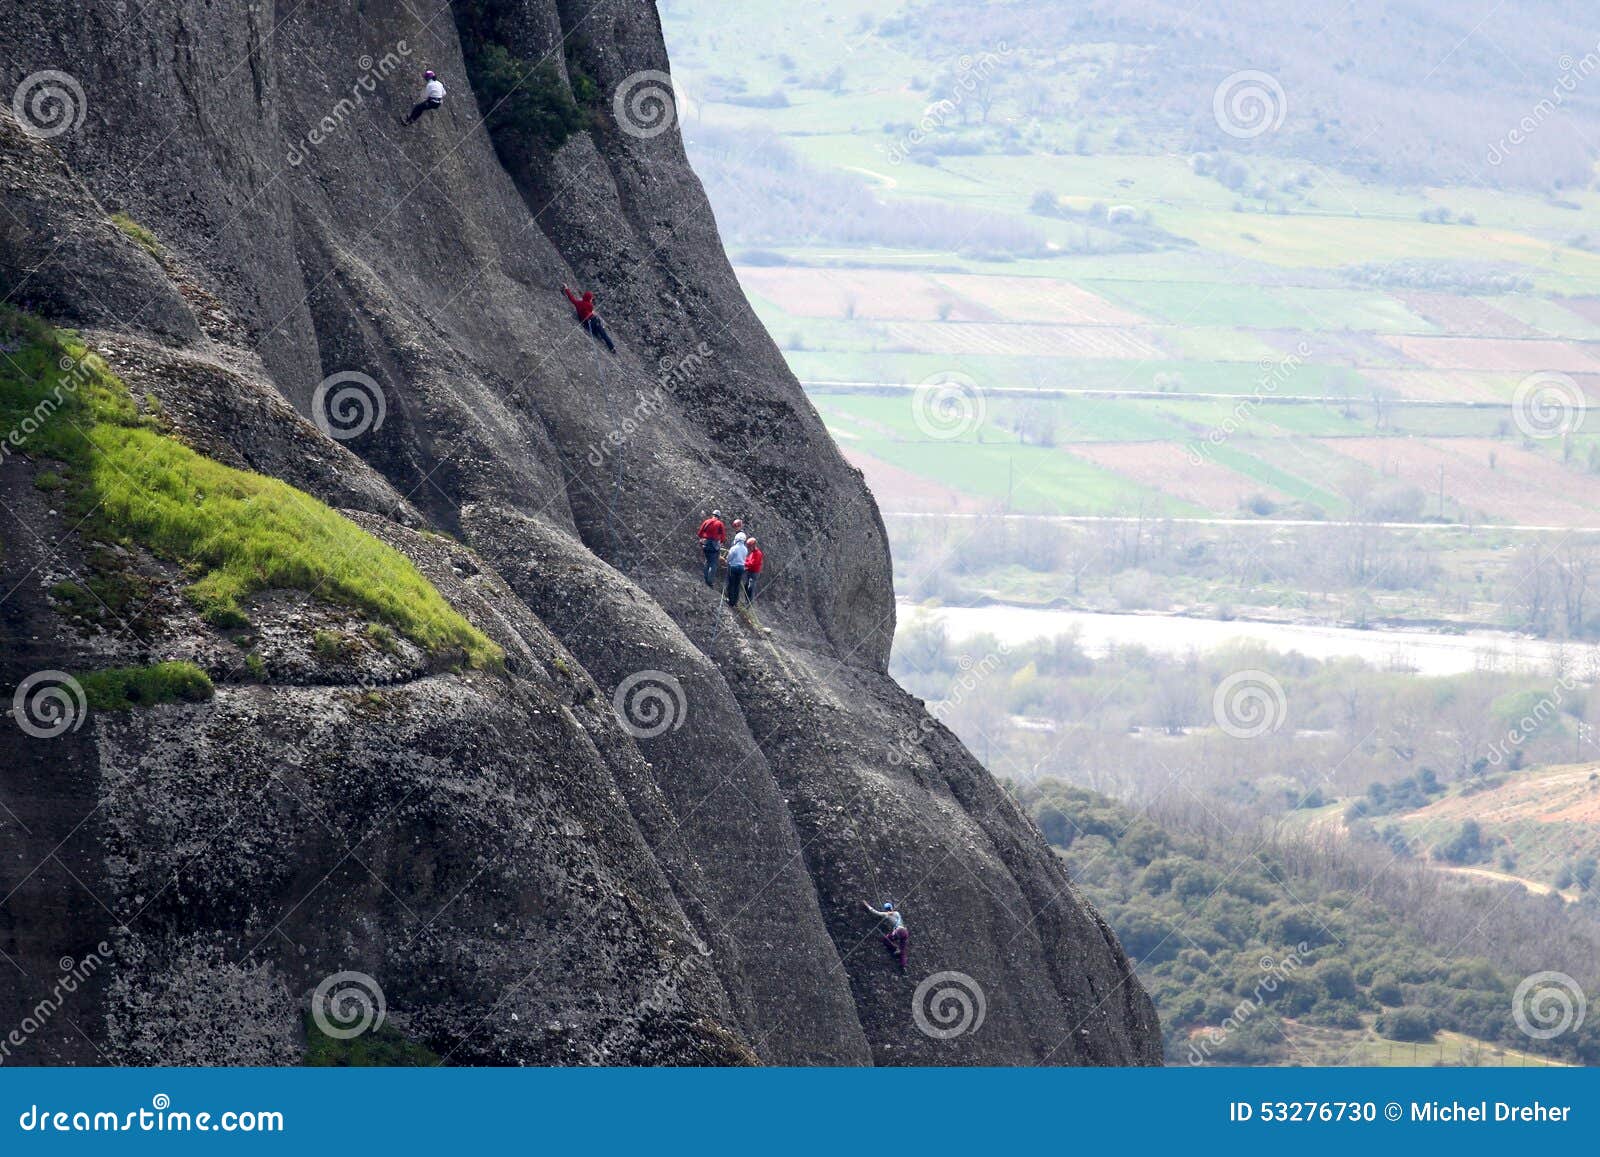 mountaineering in kastraki